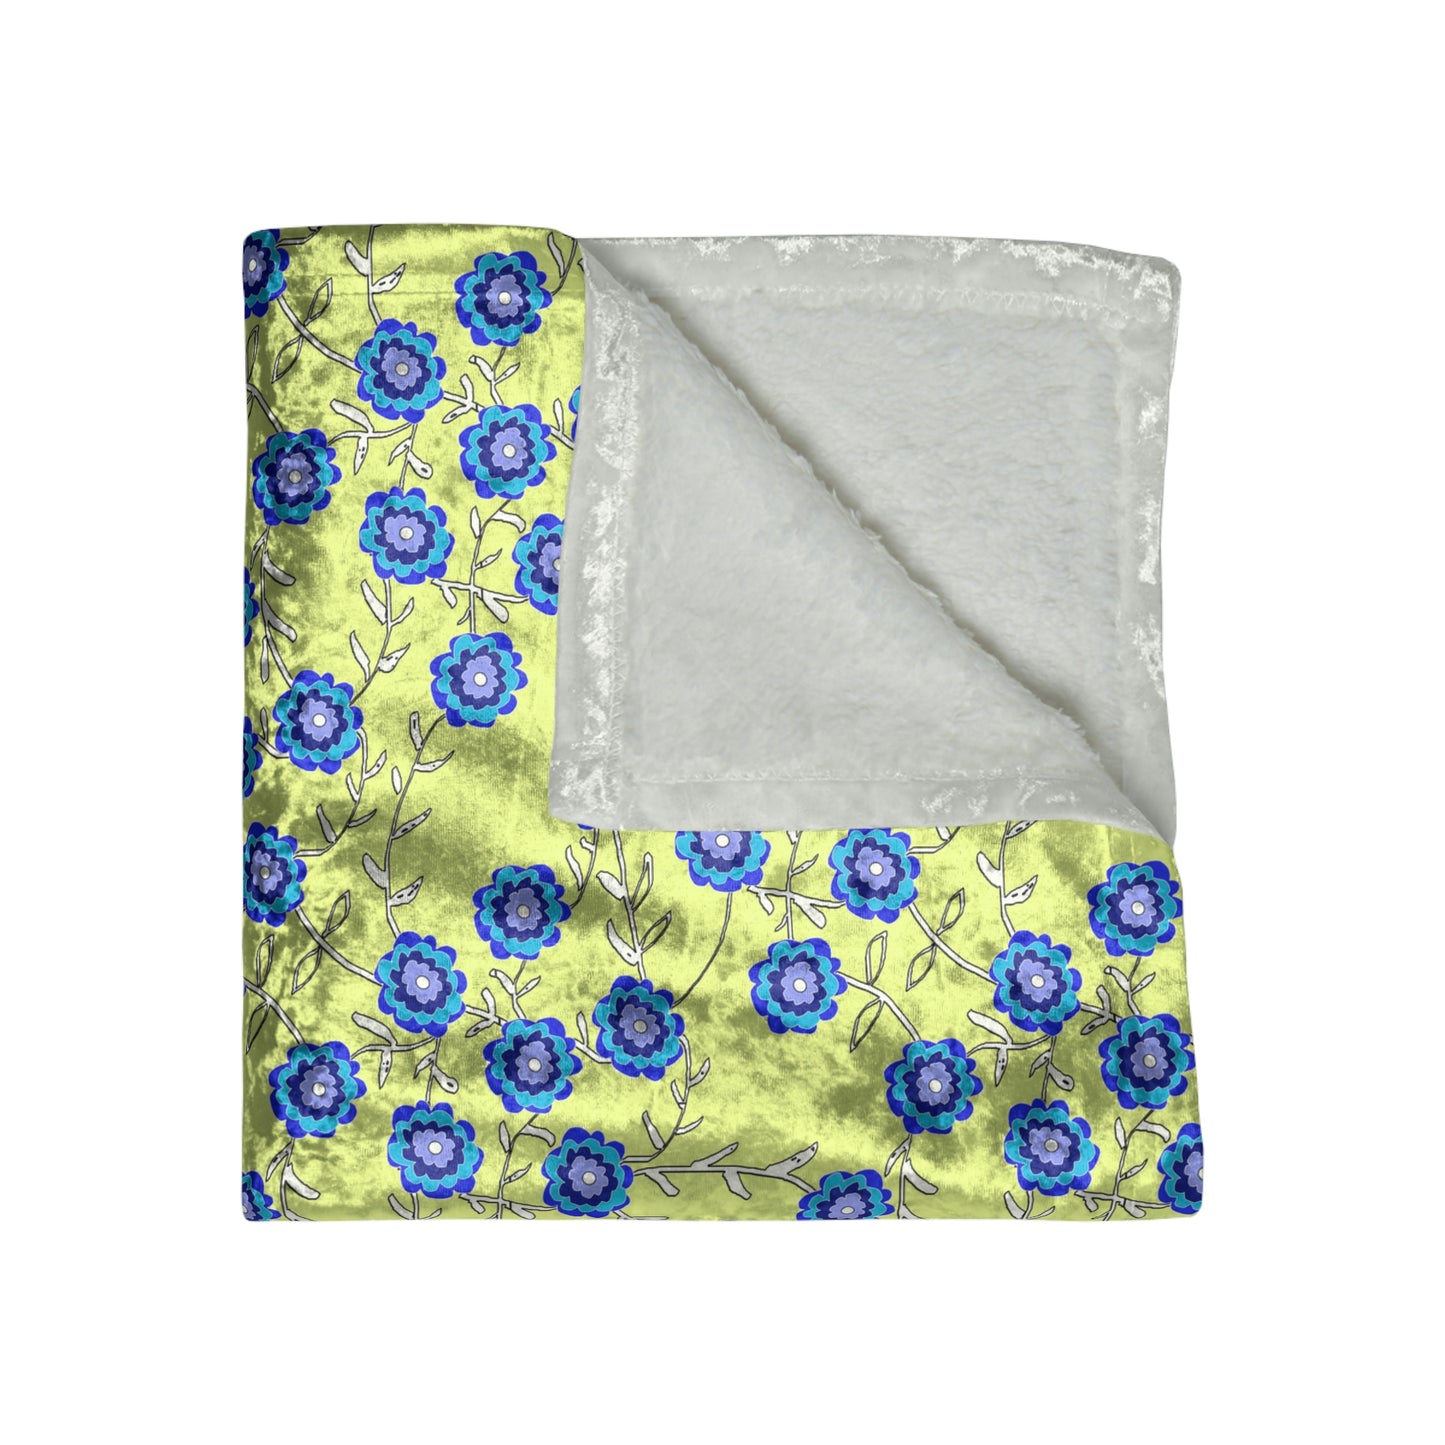 Blue Flowers on Yellow Crushed Velvet Blanket